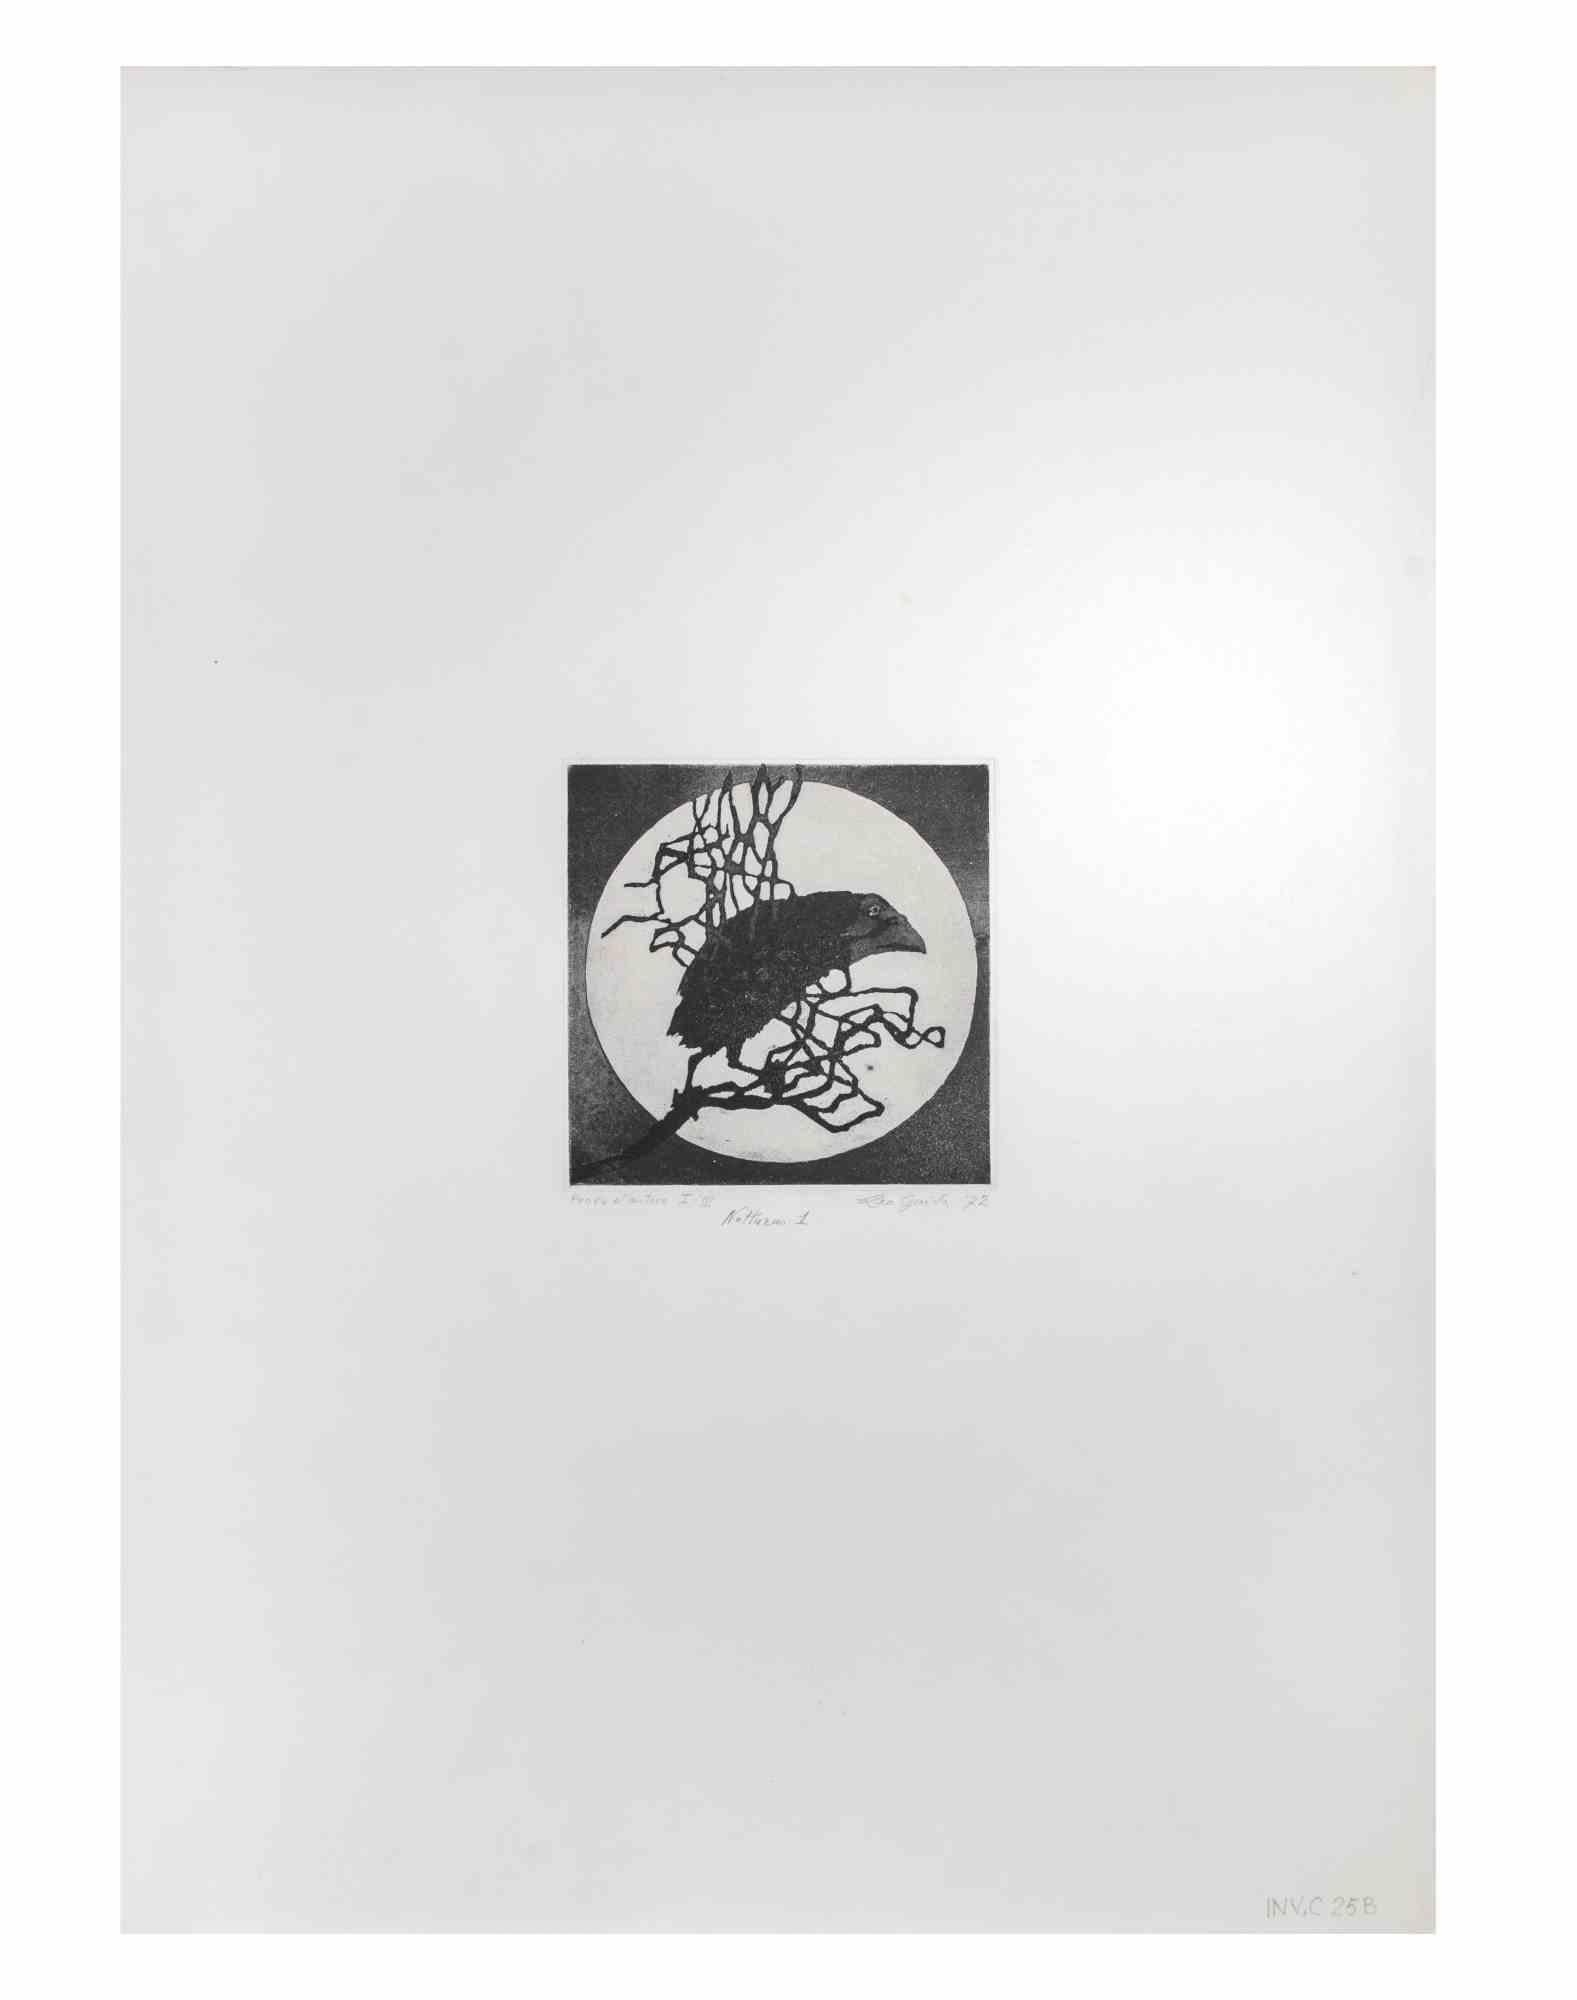 Nocturnal ist ein Kunstwerk, das von dem italienischen Künstler  Leo Guida (1992 - 2017) im Jahr 1972.

Original-Radierung in Schwarz-Weiß auf Papier.

Rechts unten im Rand handschriftlich signiert, datiert und betitelt, links unten im Rand ein